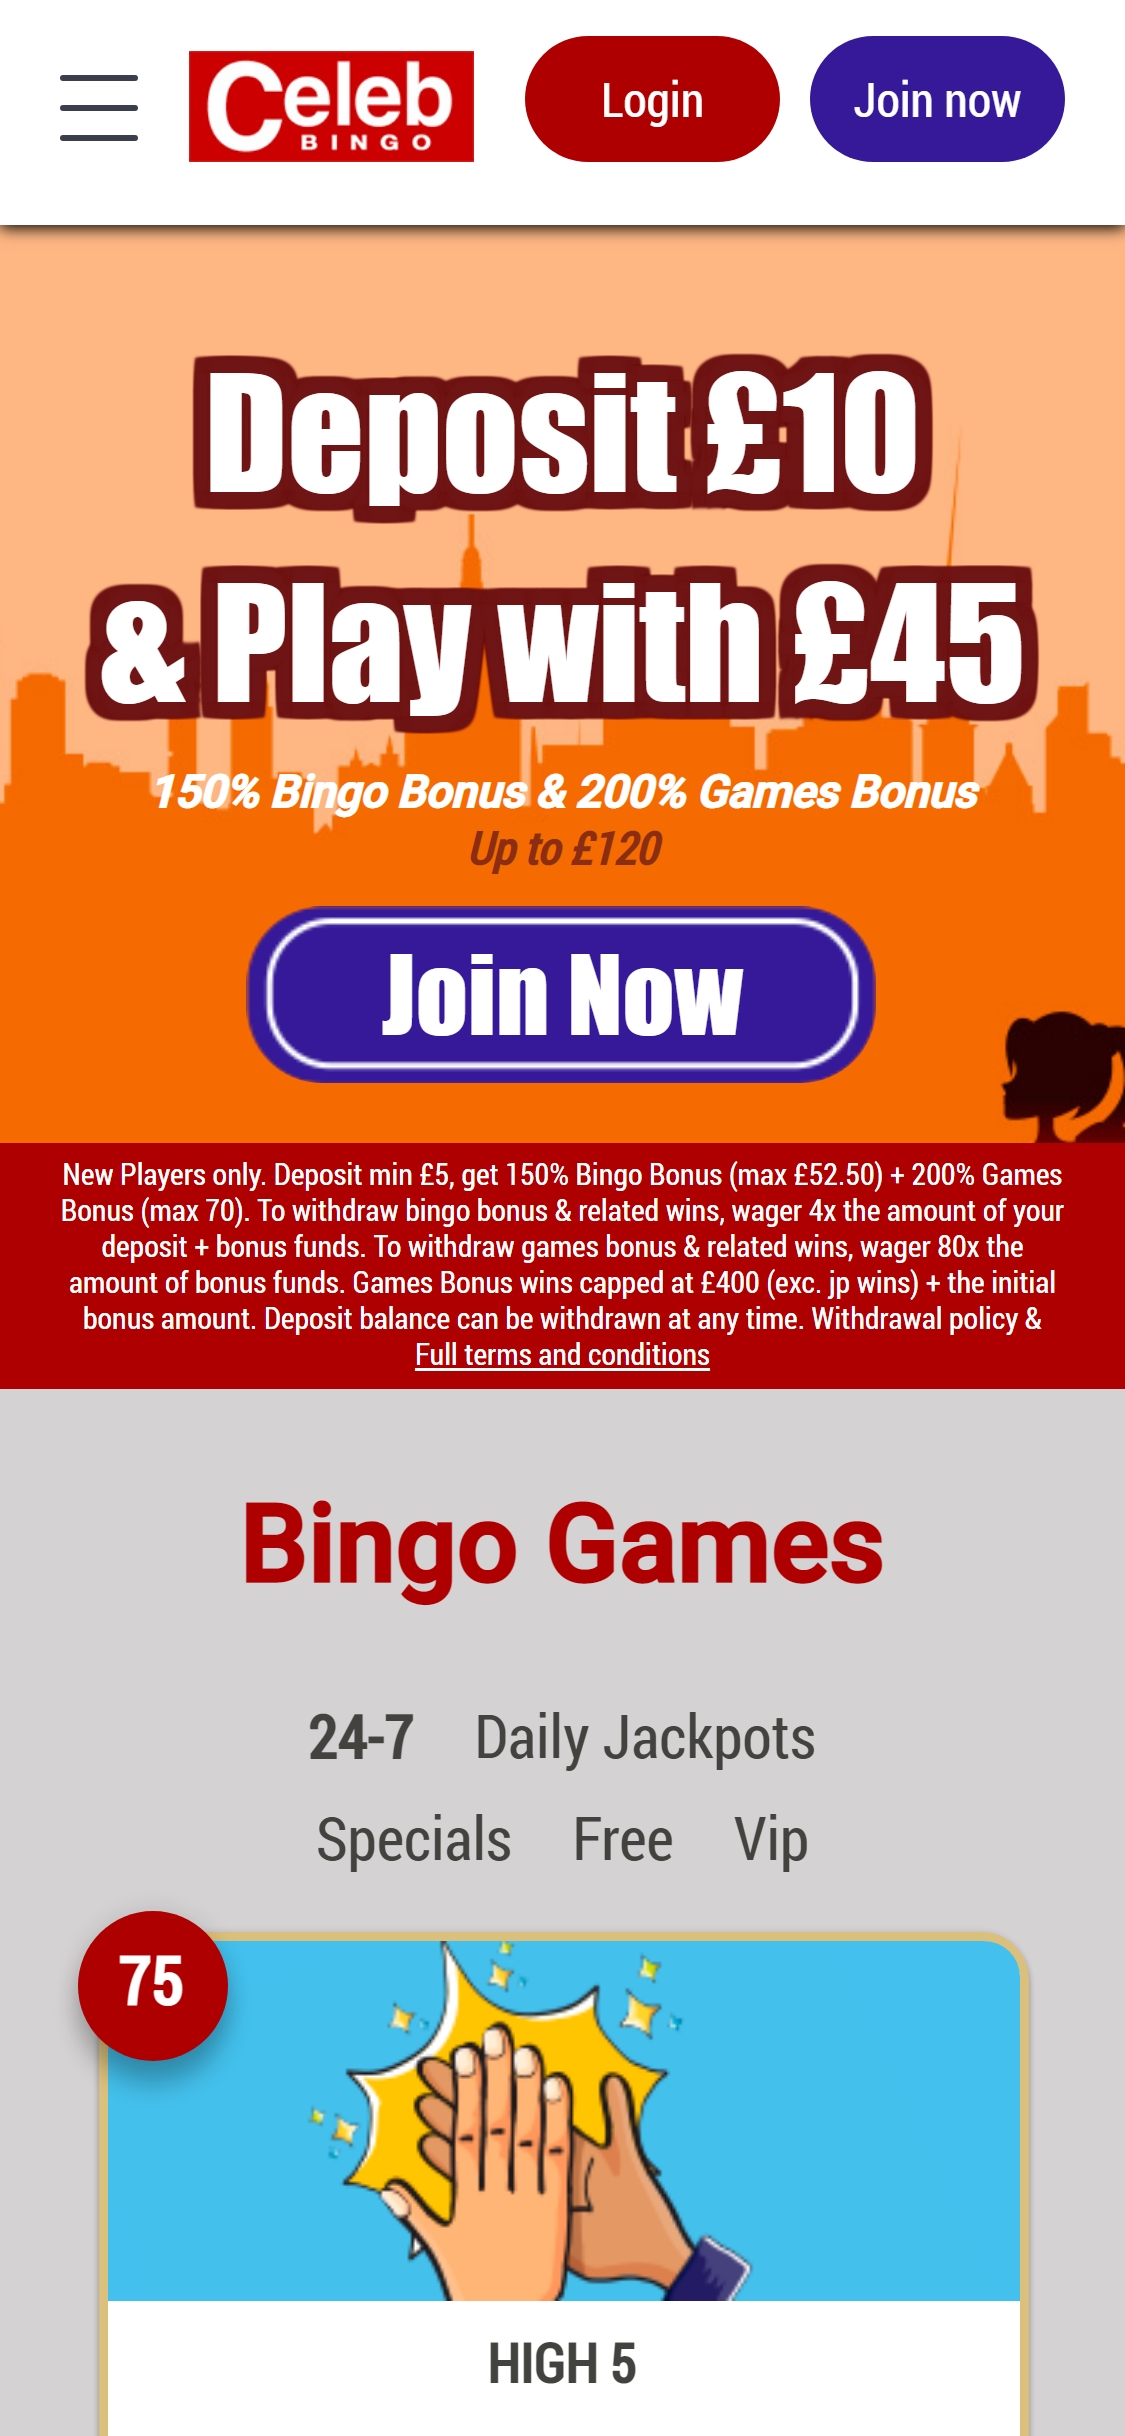 Celeb Bingo Casino Mobile Review